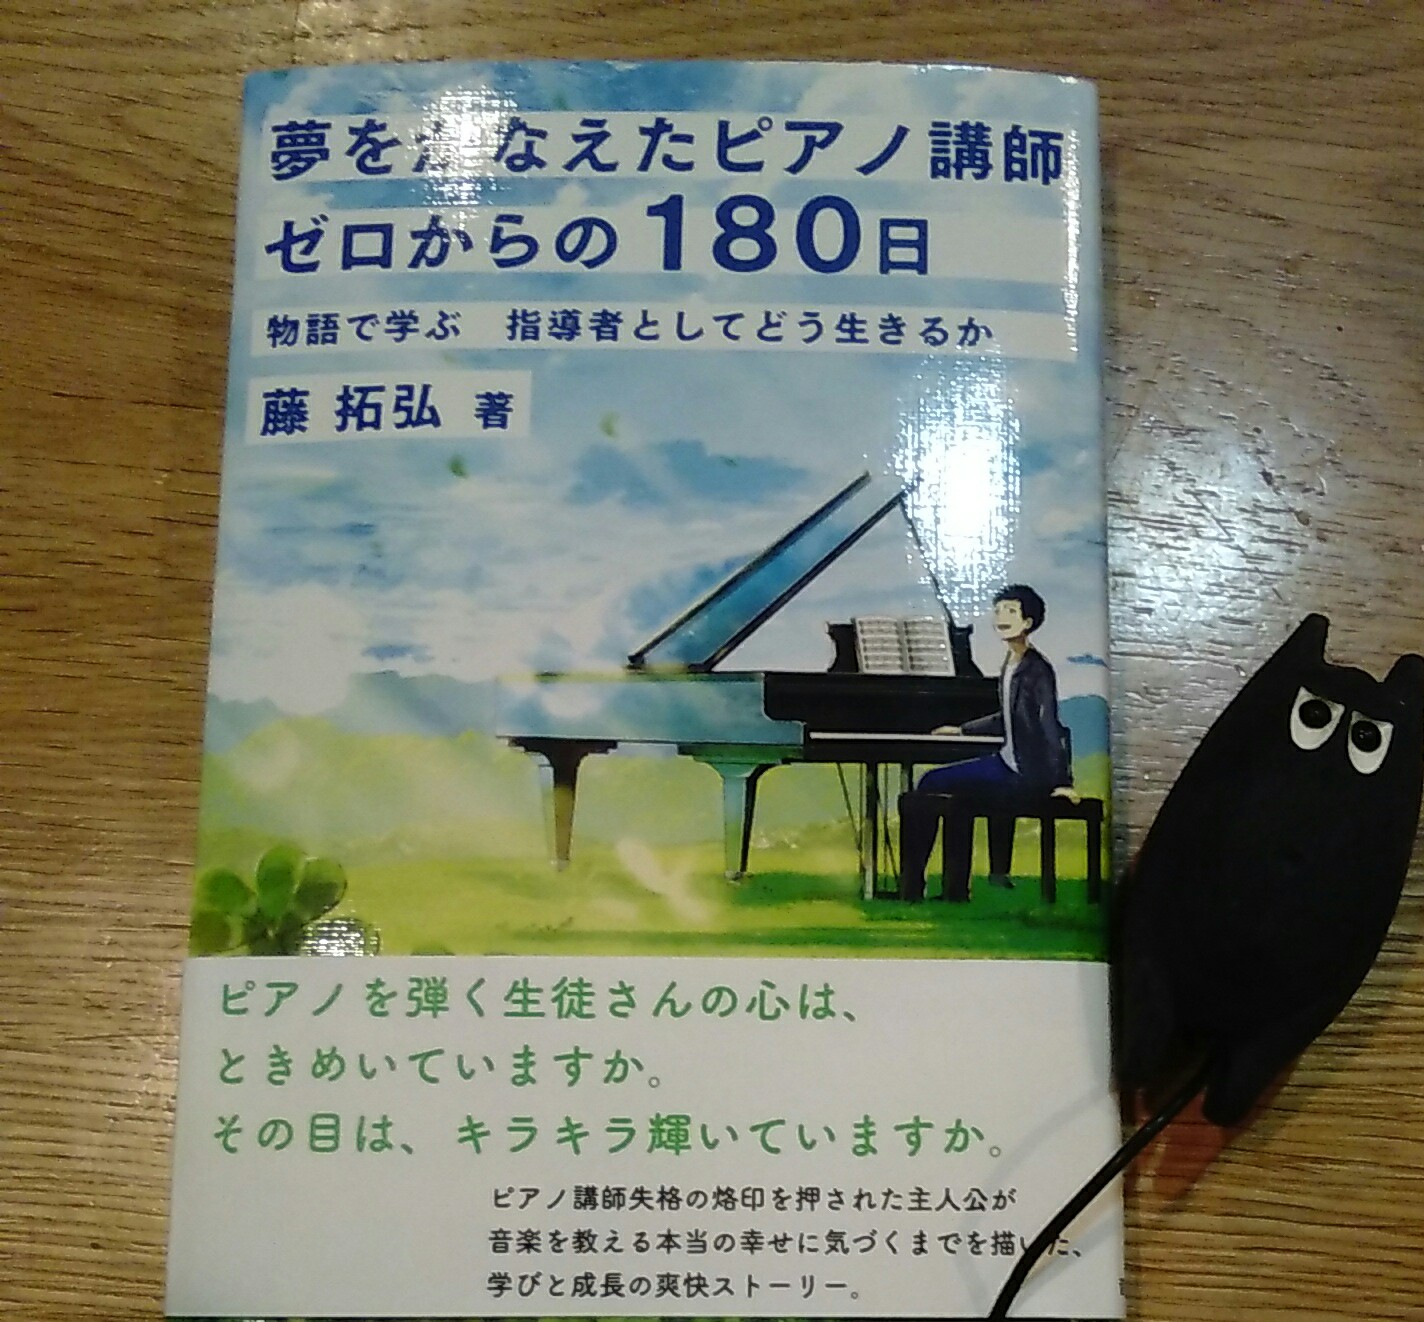 書評 夢をかなえたピアノ講師ゼロからの180日 著 藤 拓弘氏 ブログ 音楽家のしごと塾